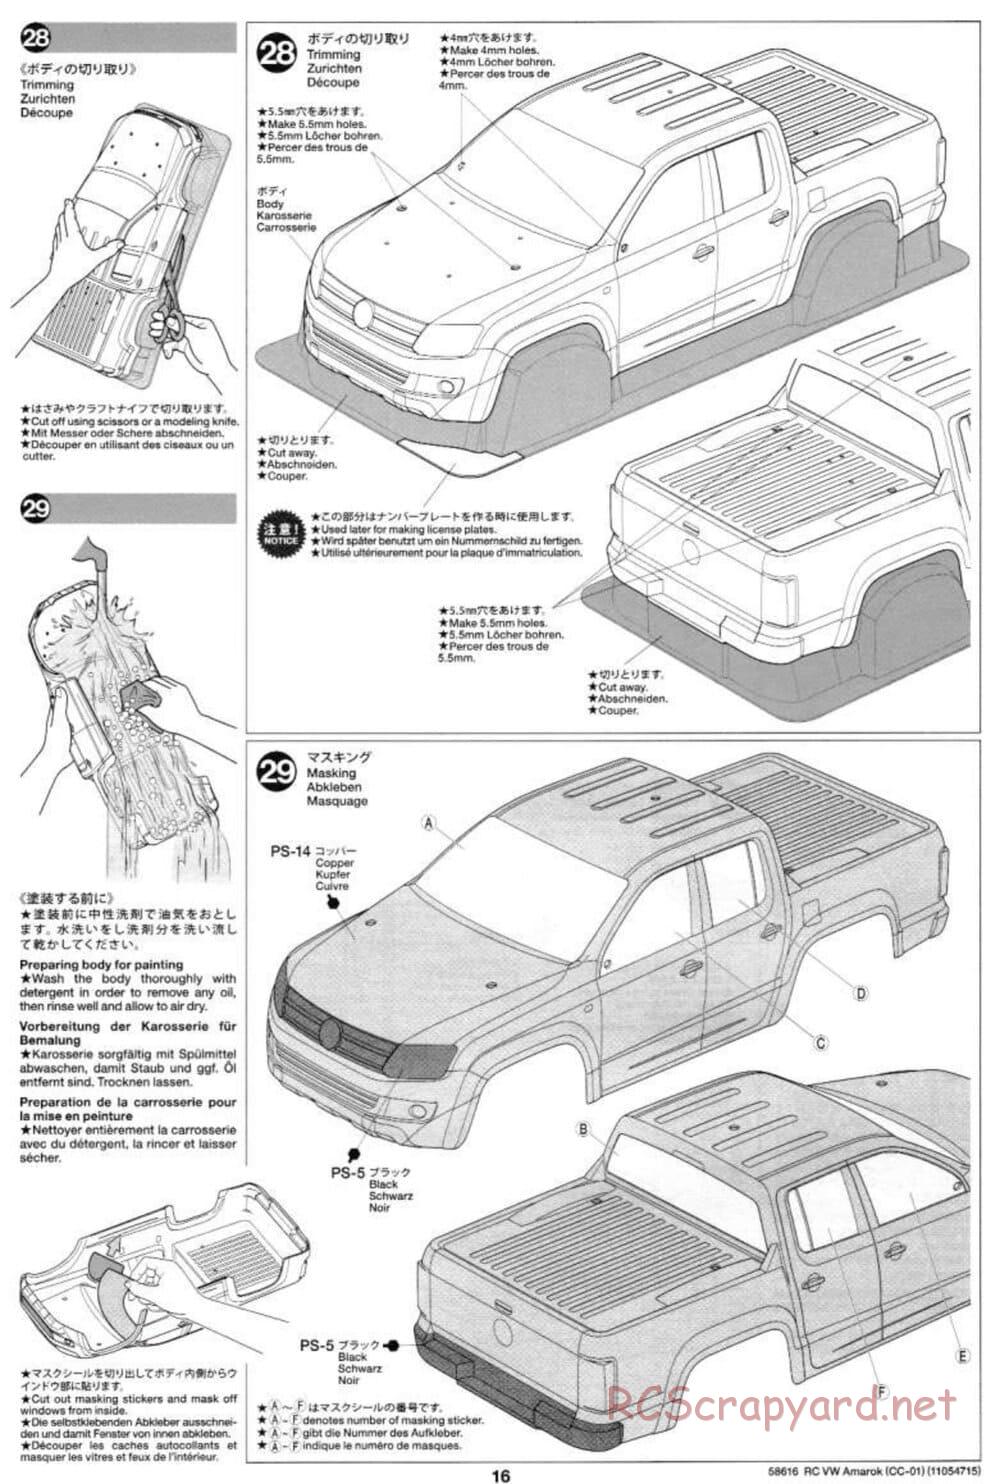 Tamiya - Volkswagen Amarok - CC-01 Chassis - Manual - Page 16